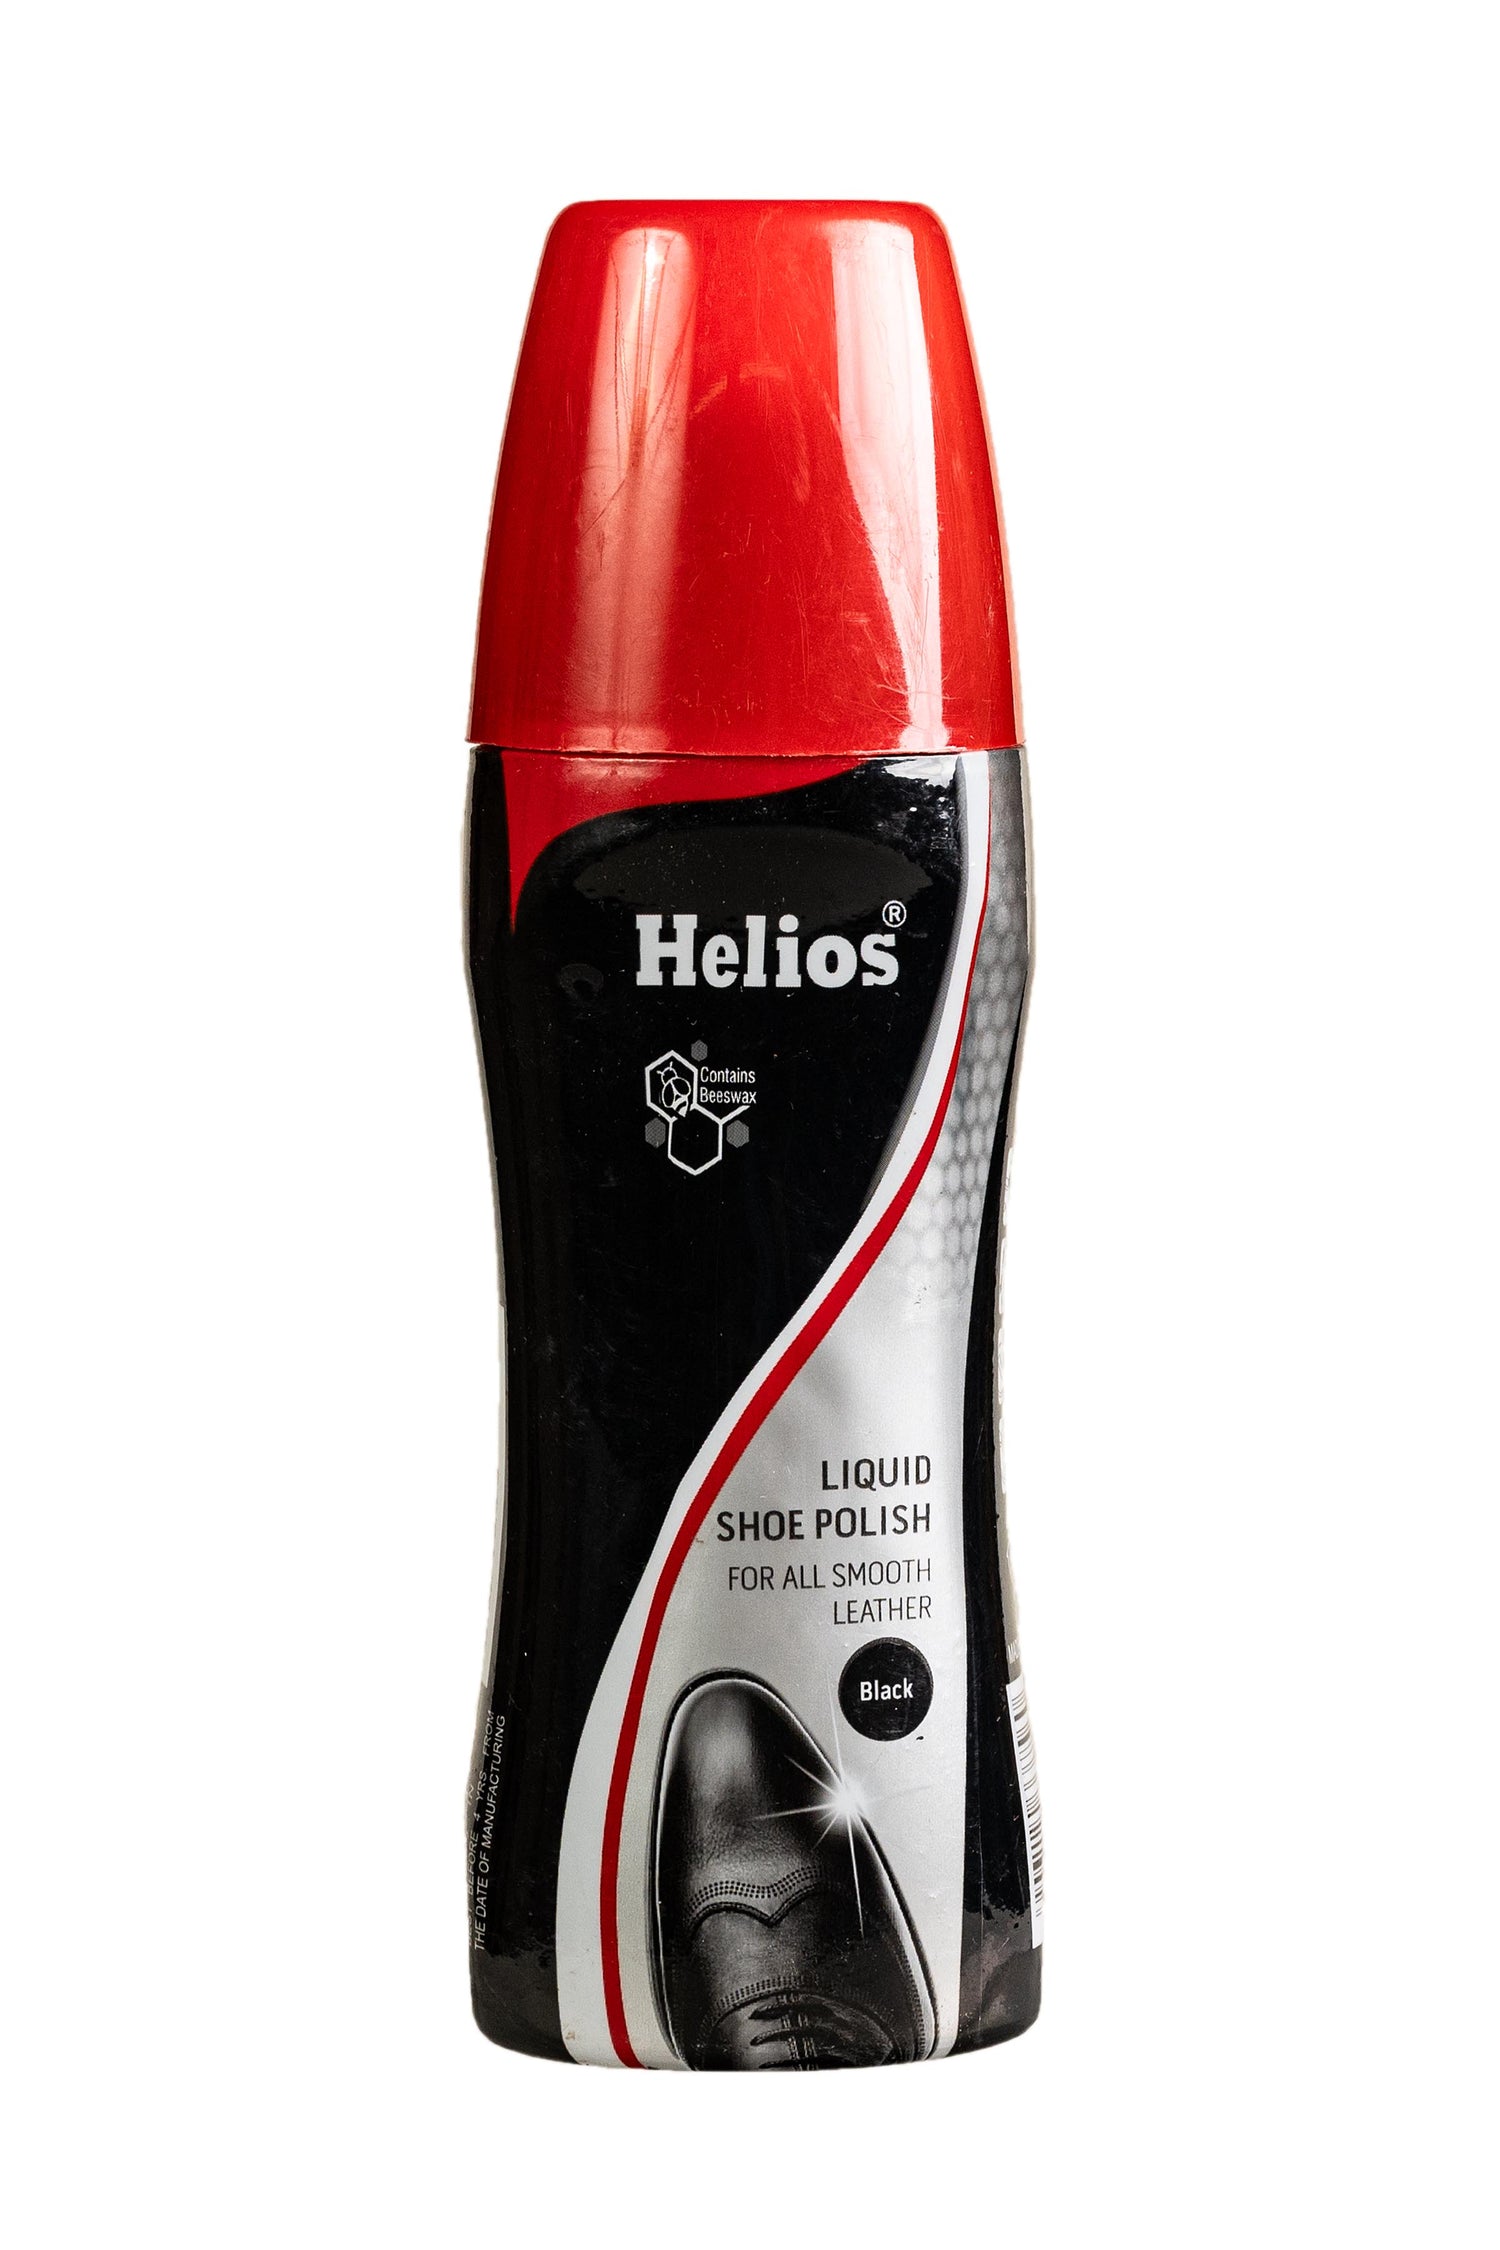 Helios Black Liquid Shoe Polish